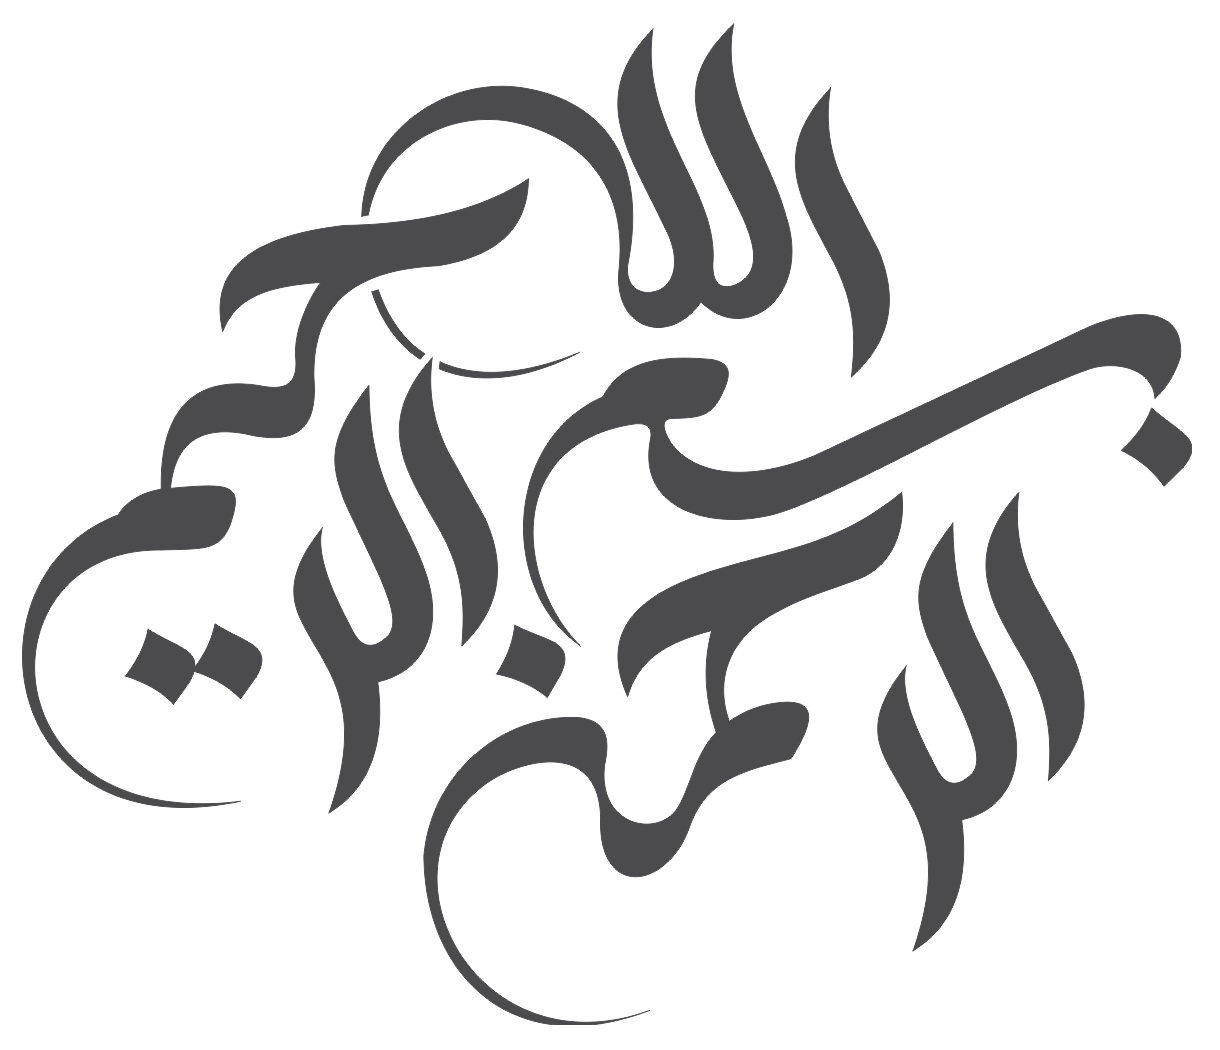 Arte de caligrafia árabe de Bismillah